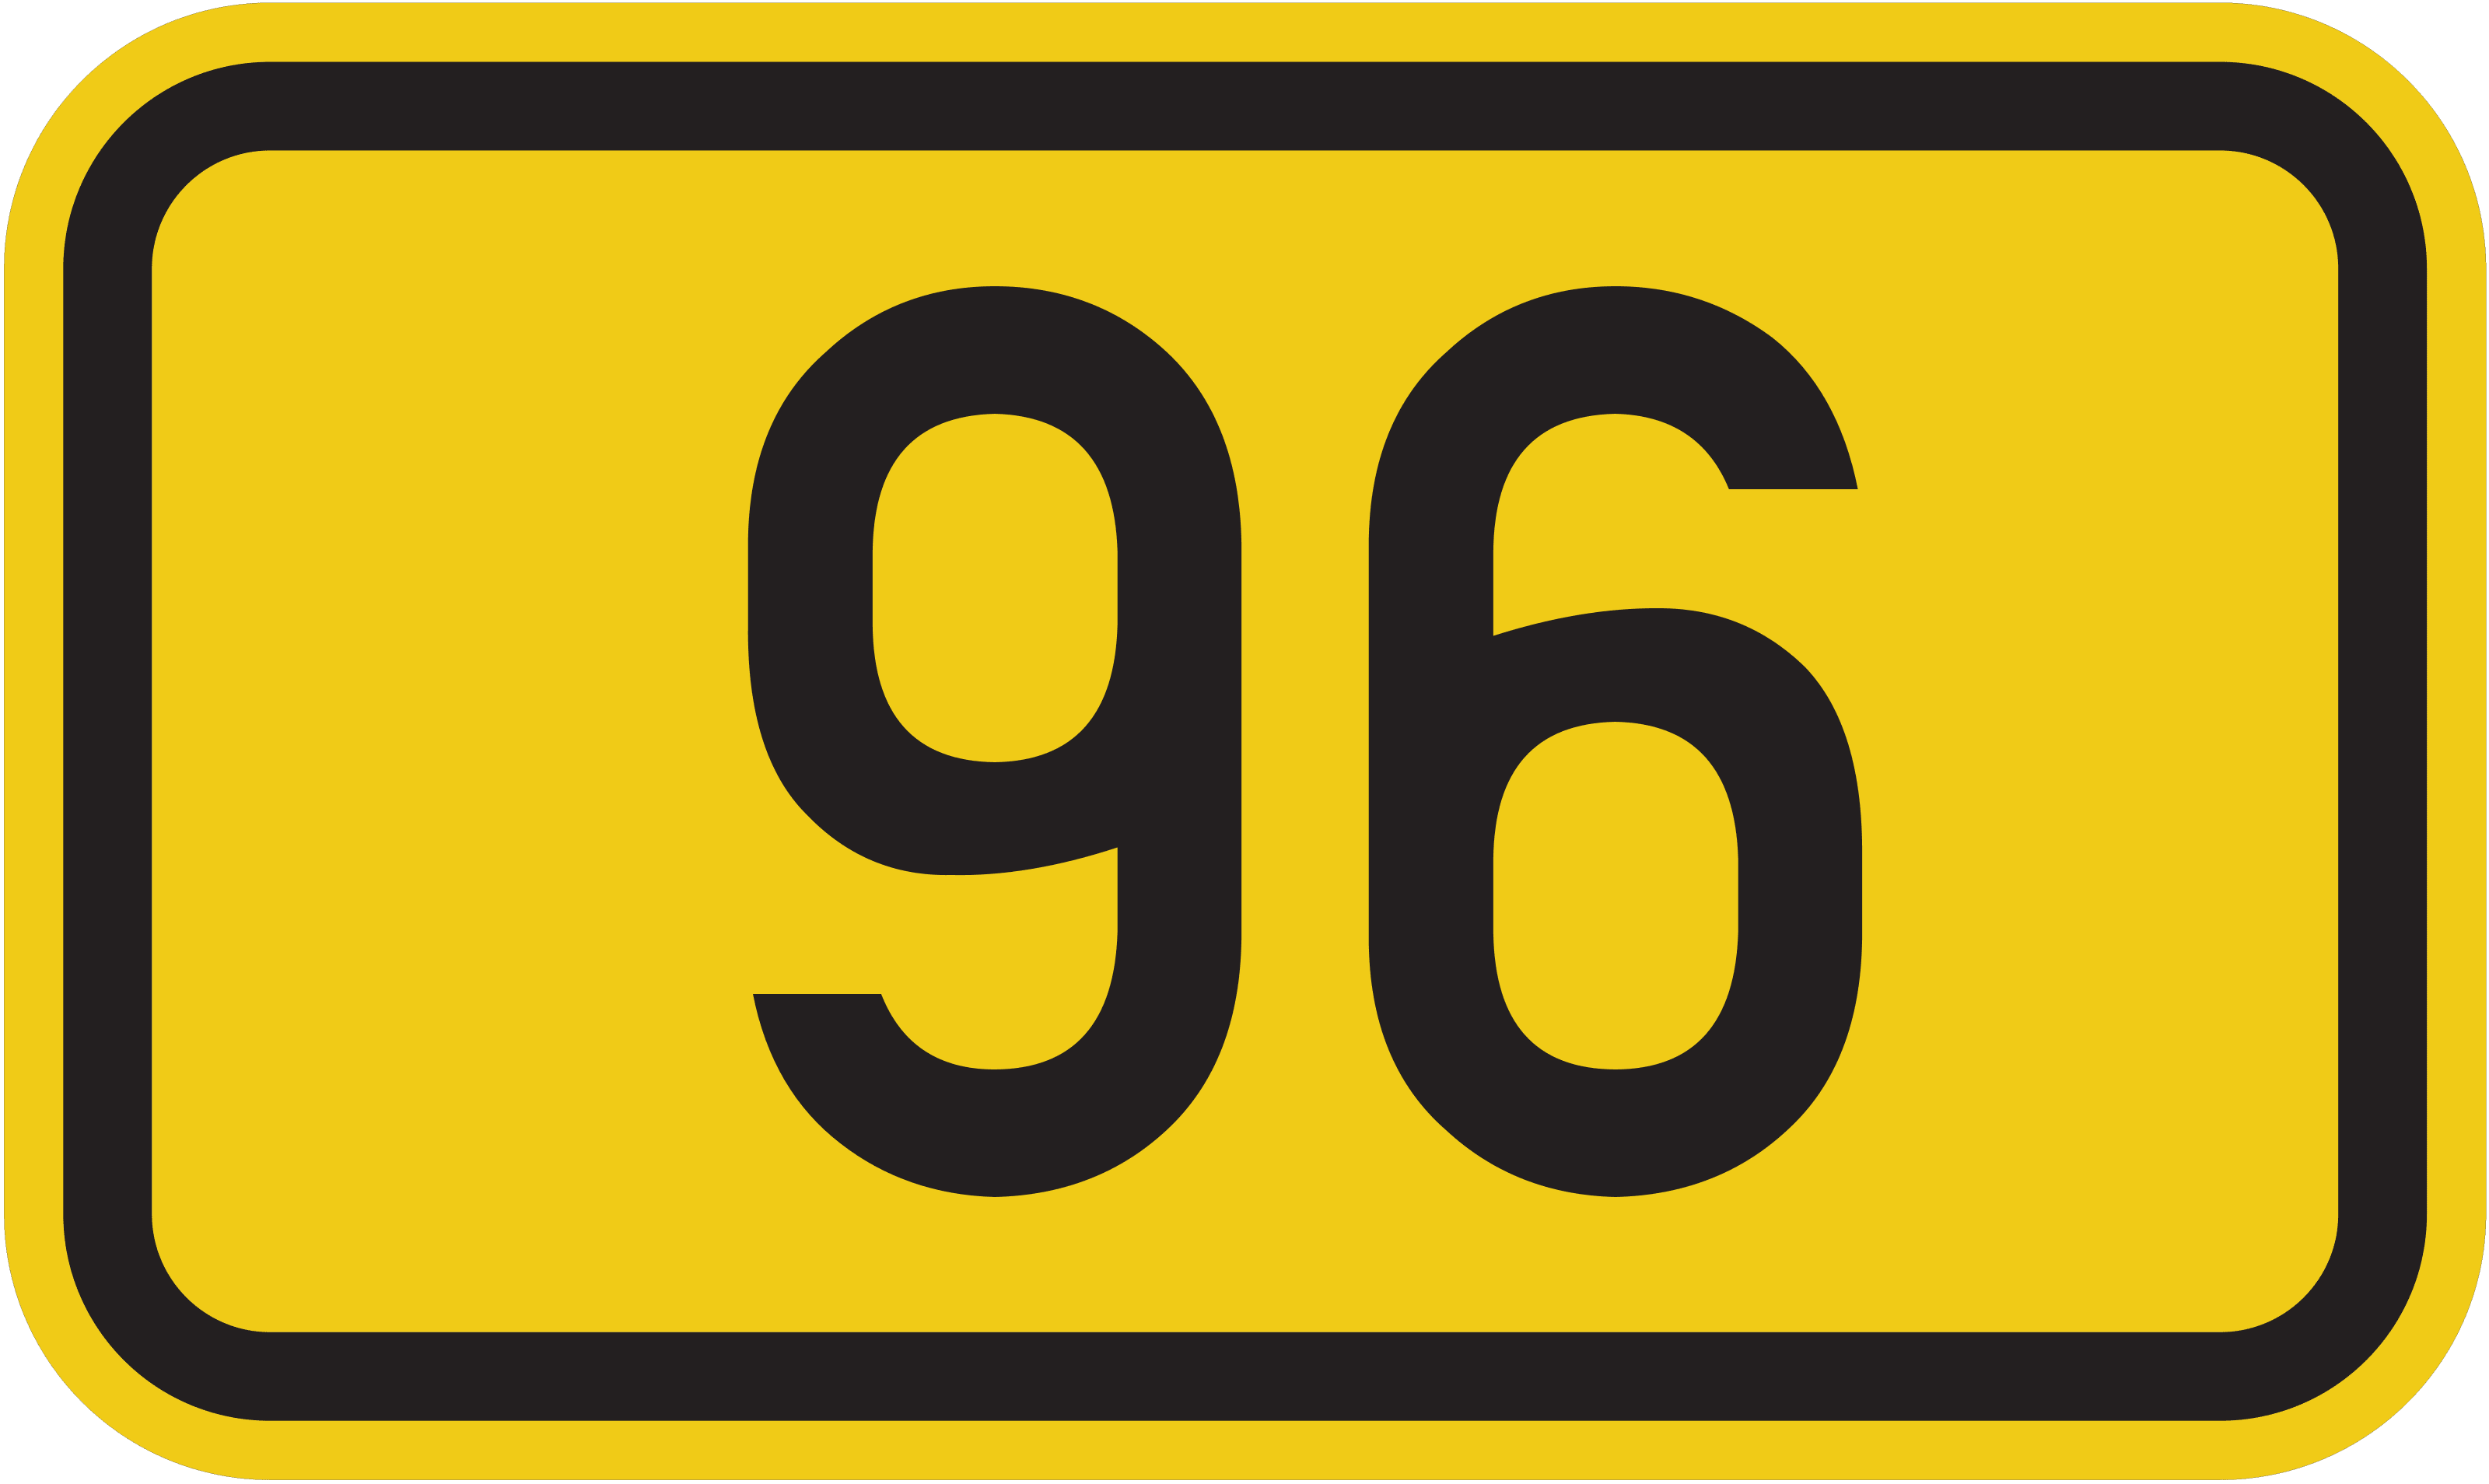 Bundesstraße B 96